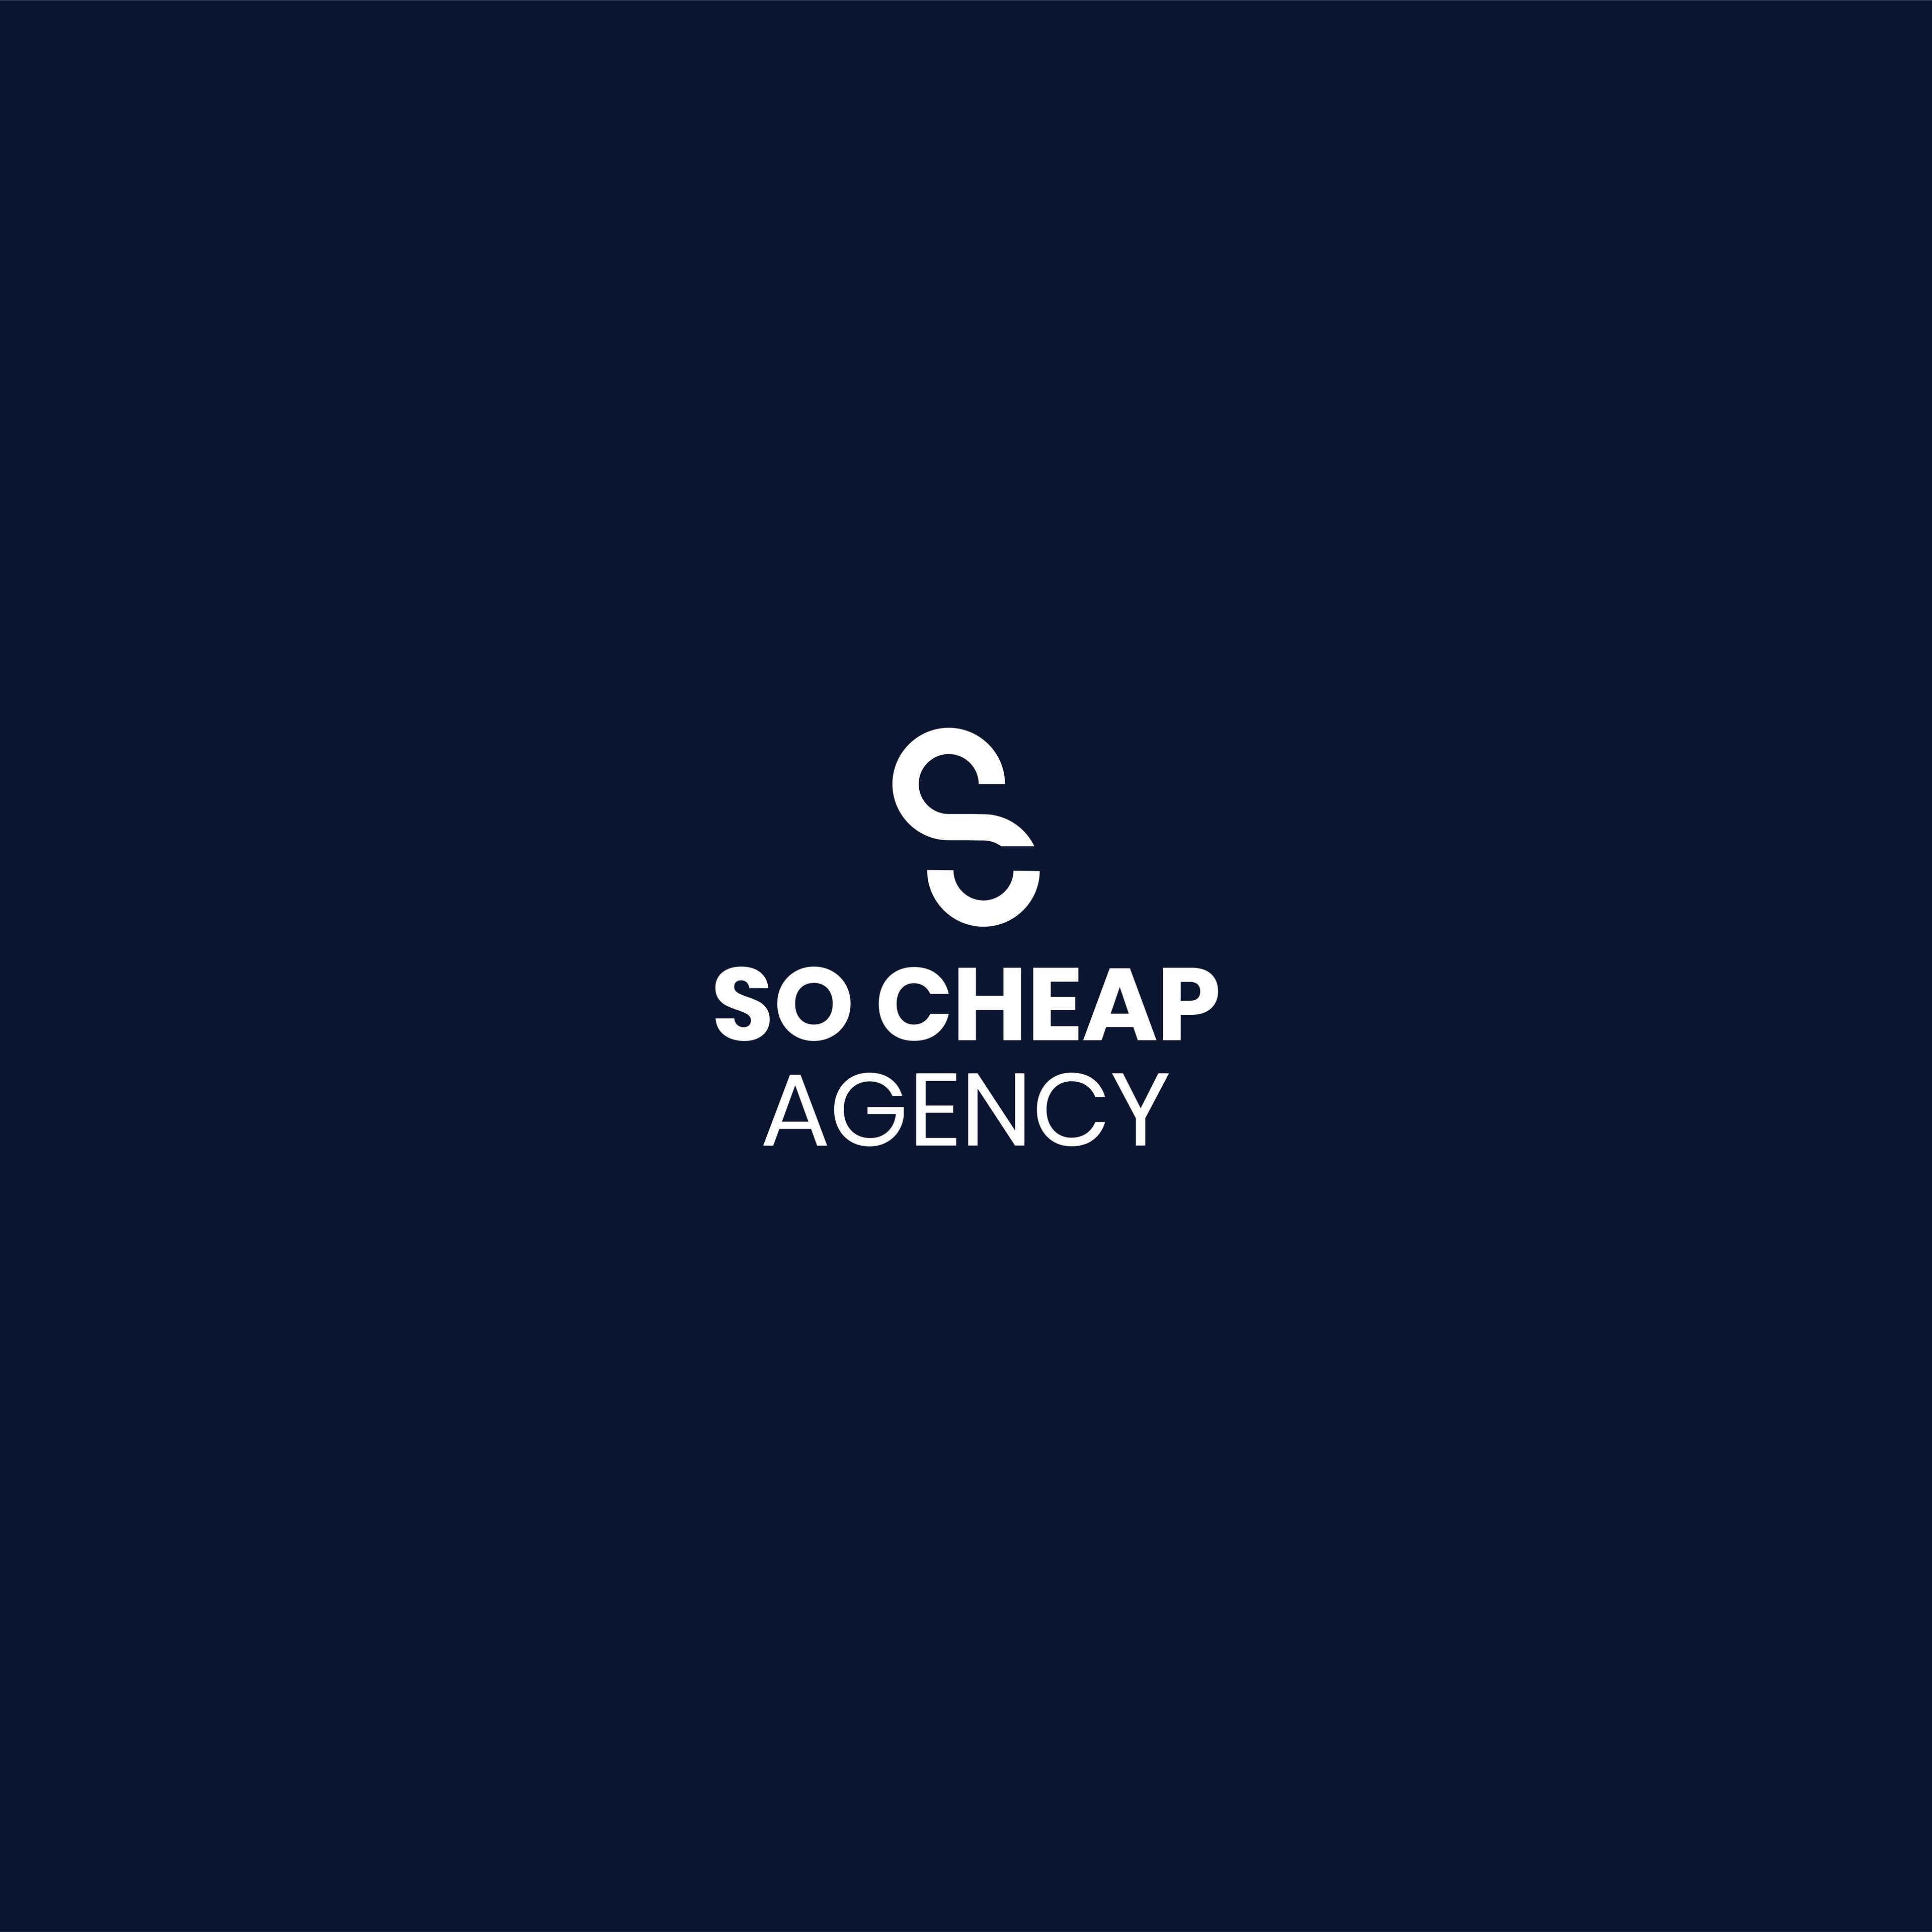 So Cheap Agency cover